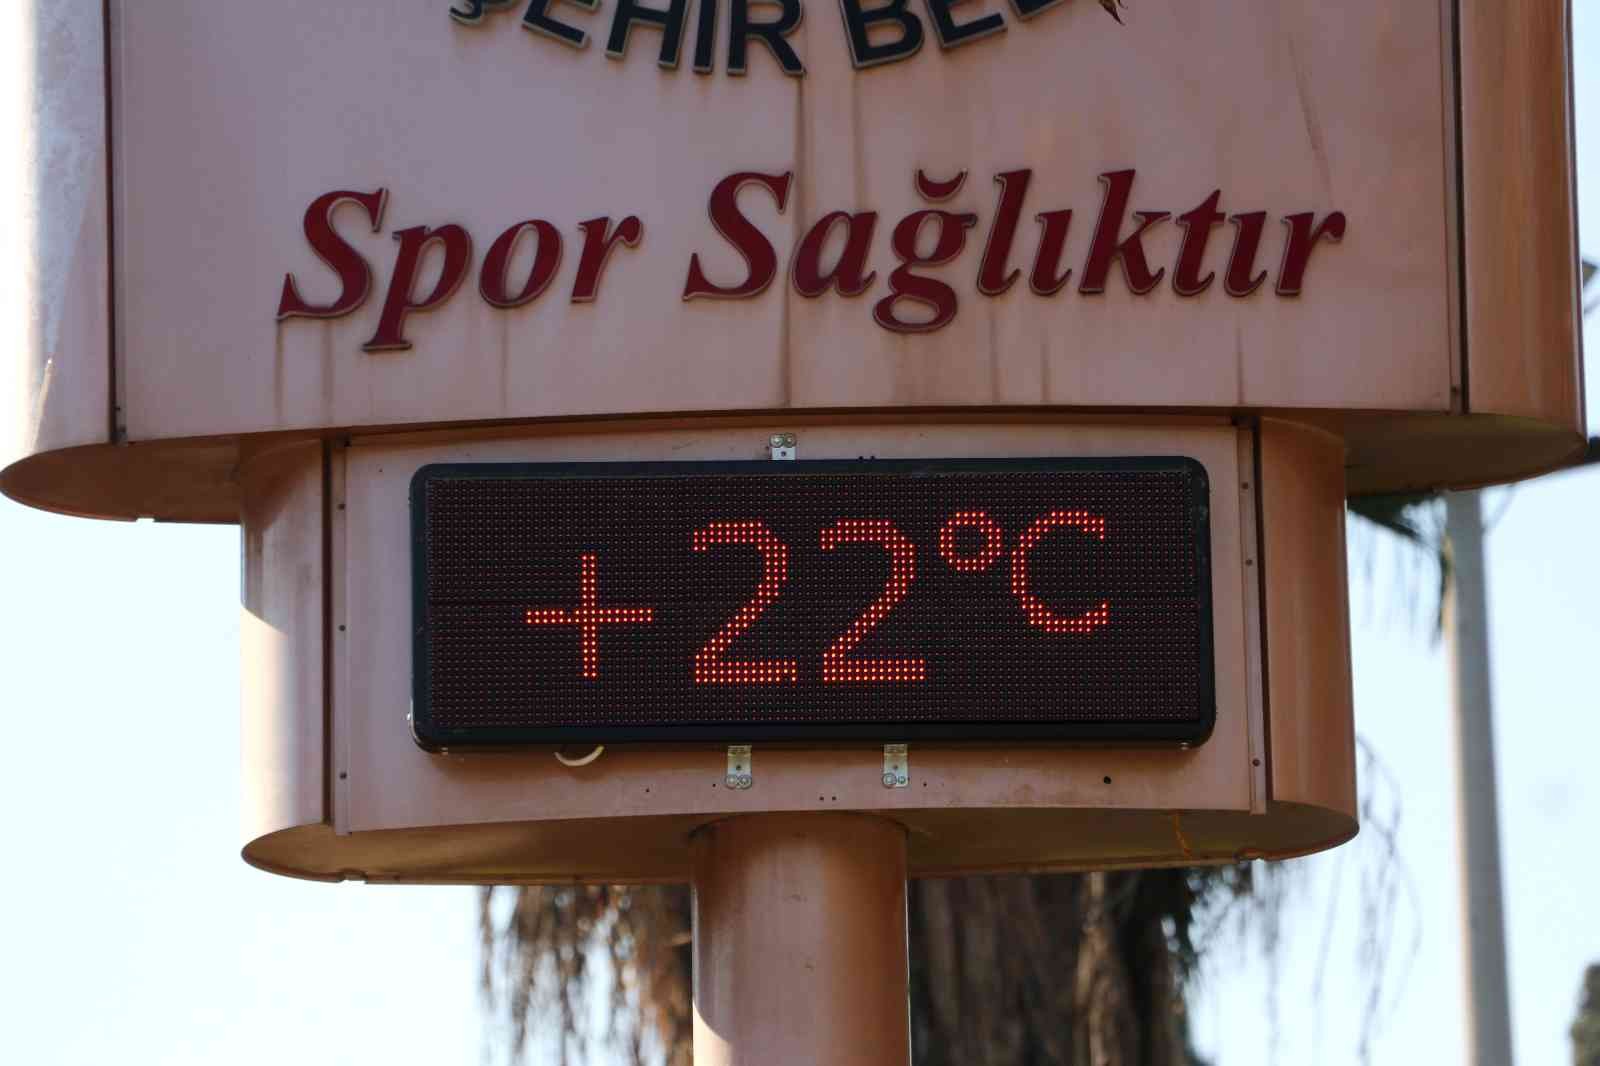 Adana’da termometreler 22 dereceyi gösterdi